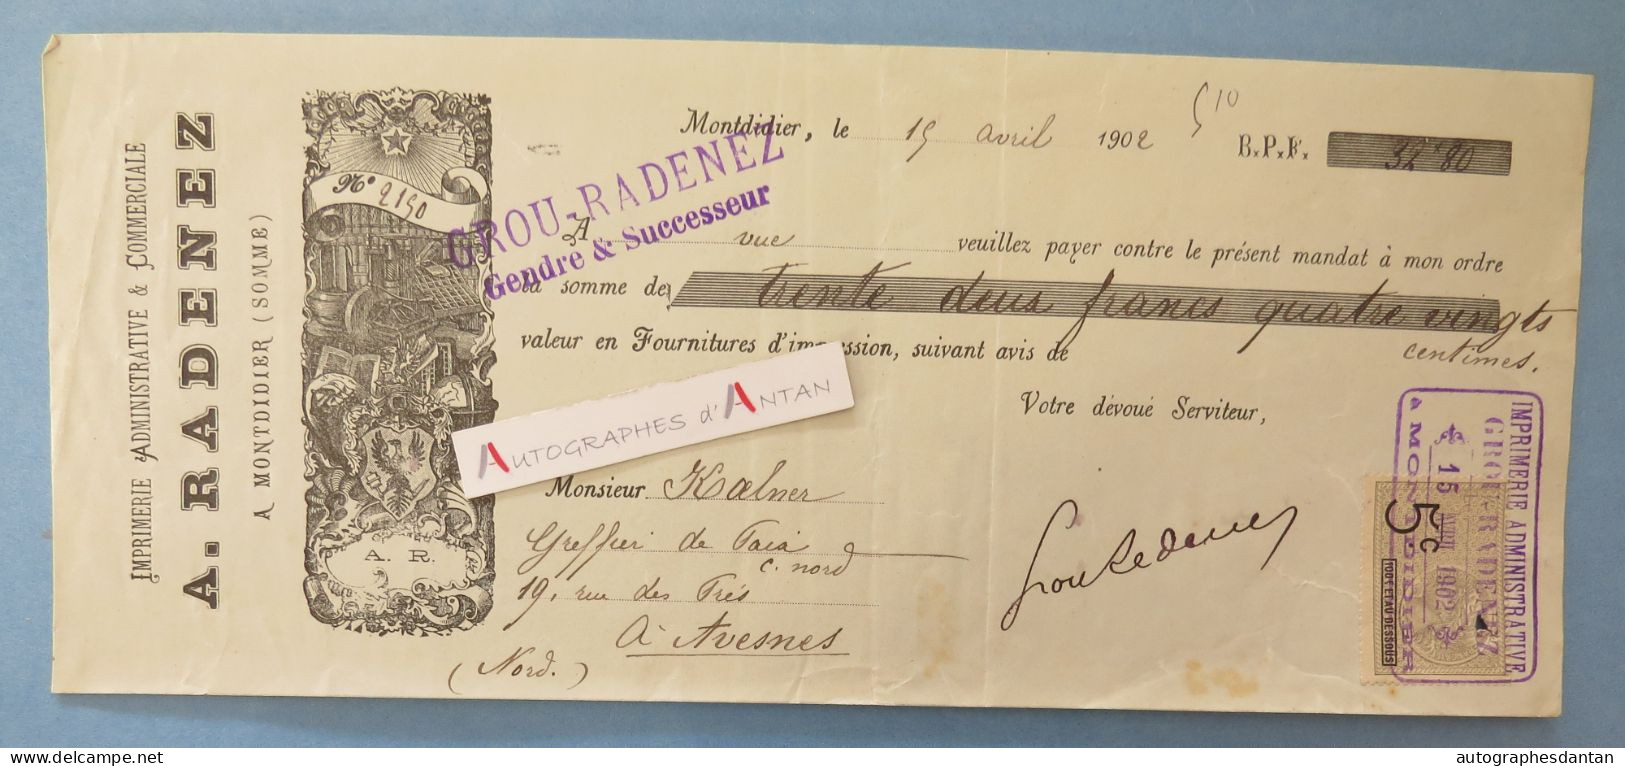 ● Montdidier 1902 - A. RADENEZ Imprimerie - Grou - Rare Mandat Illustré à M. Kalner à Avesnes - SOMME 80 Vieux Papier - Letras De Cambio